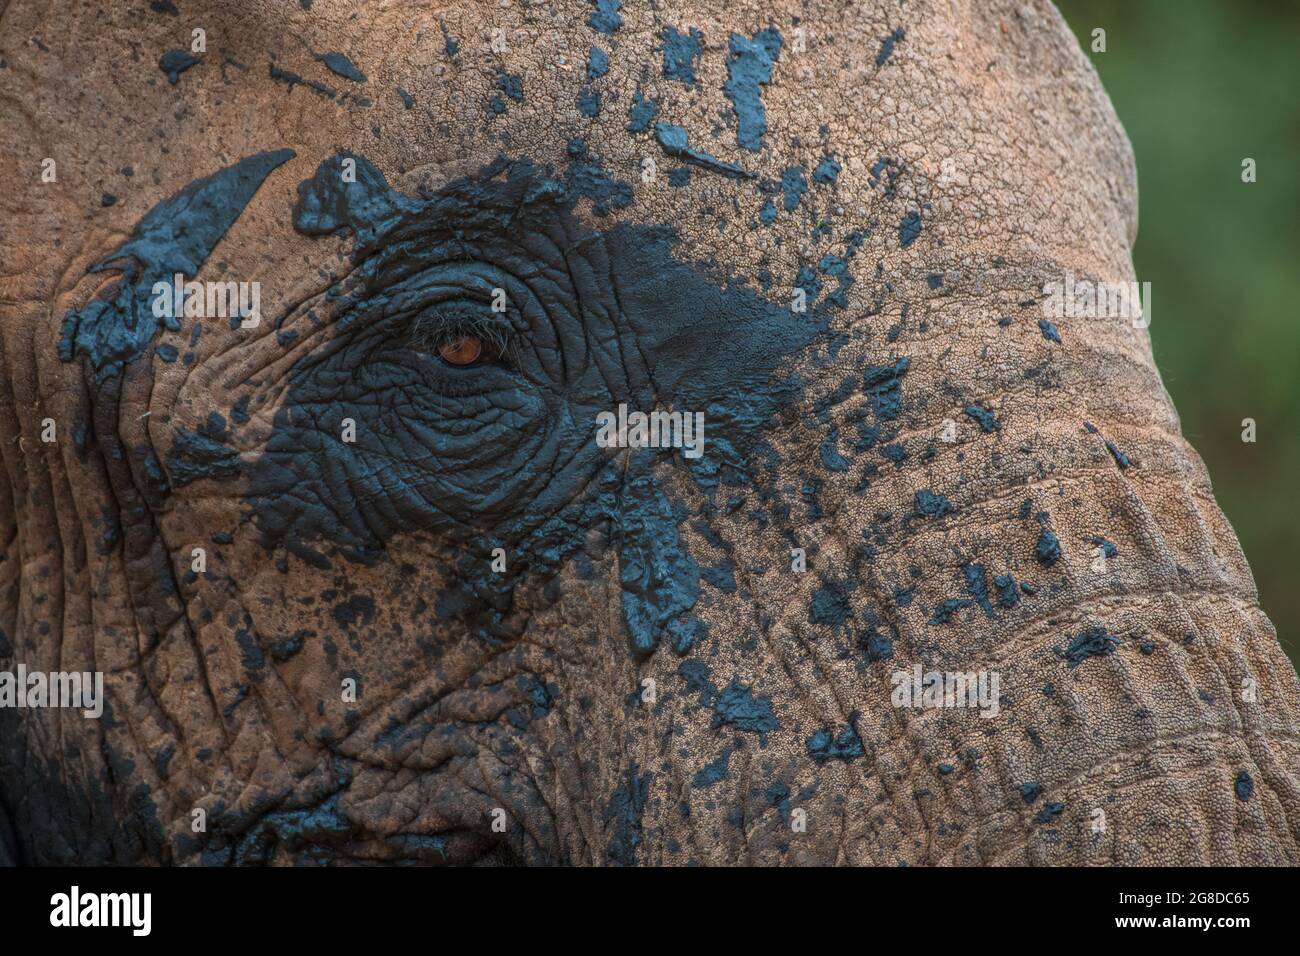 Éléphant avec de la boue sur son visage l'ayant éclaboussé autour de lui pendant un bain de boue, gros plan de l'oeil, texture boueuse Banque D'Images